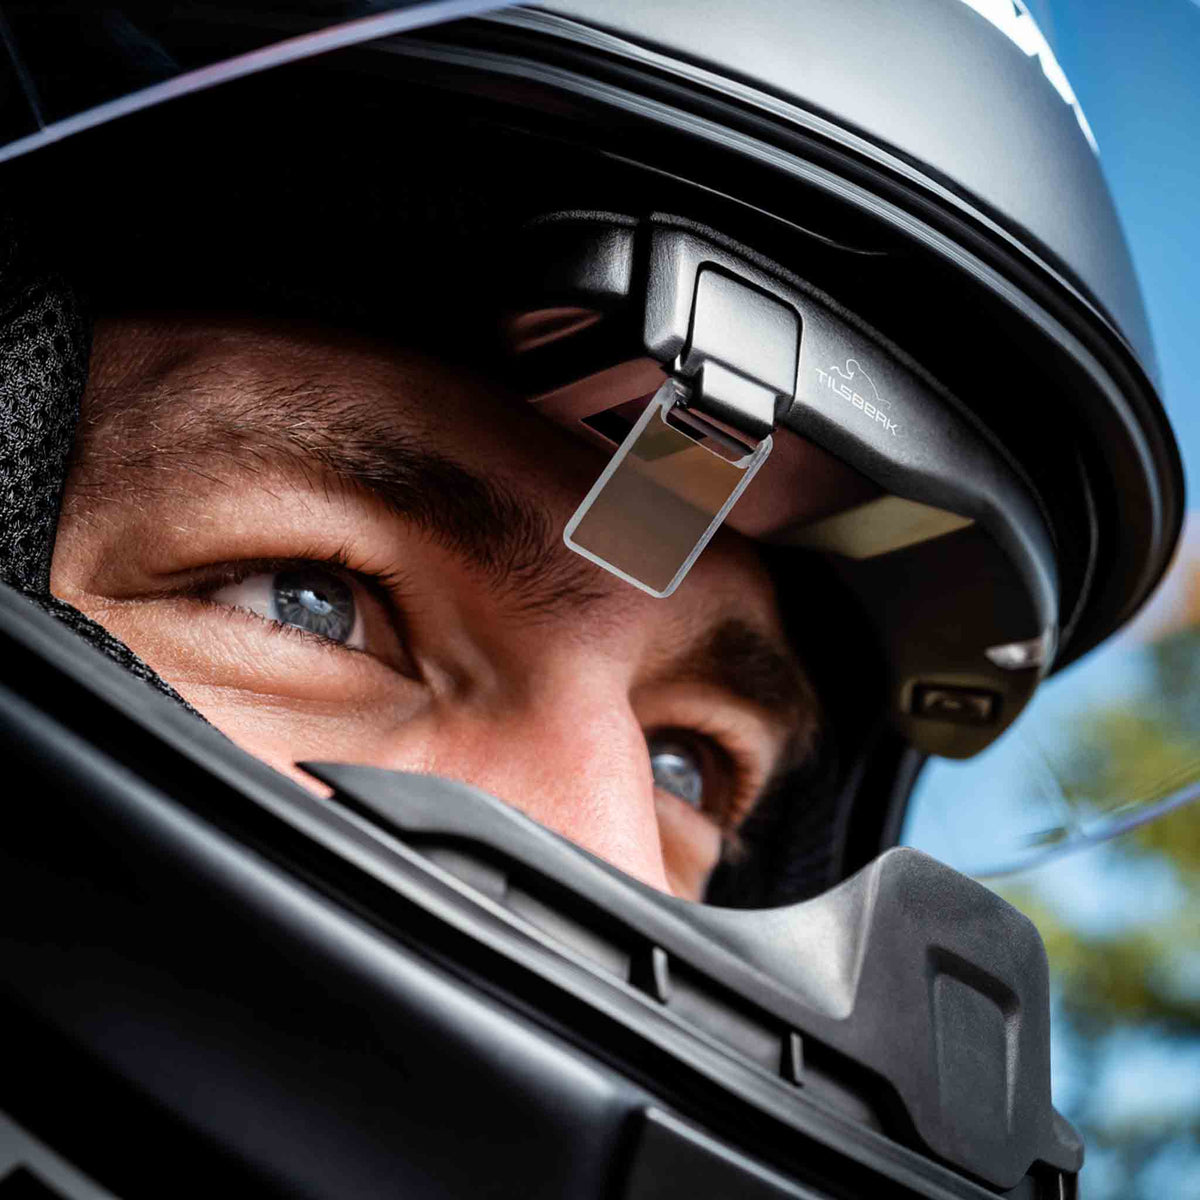 Tilsberk | Head-Up Display for Motorcyclists